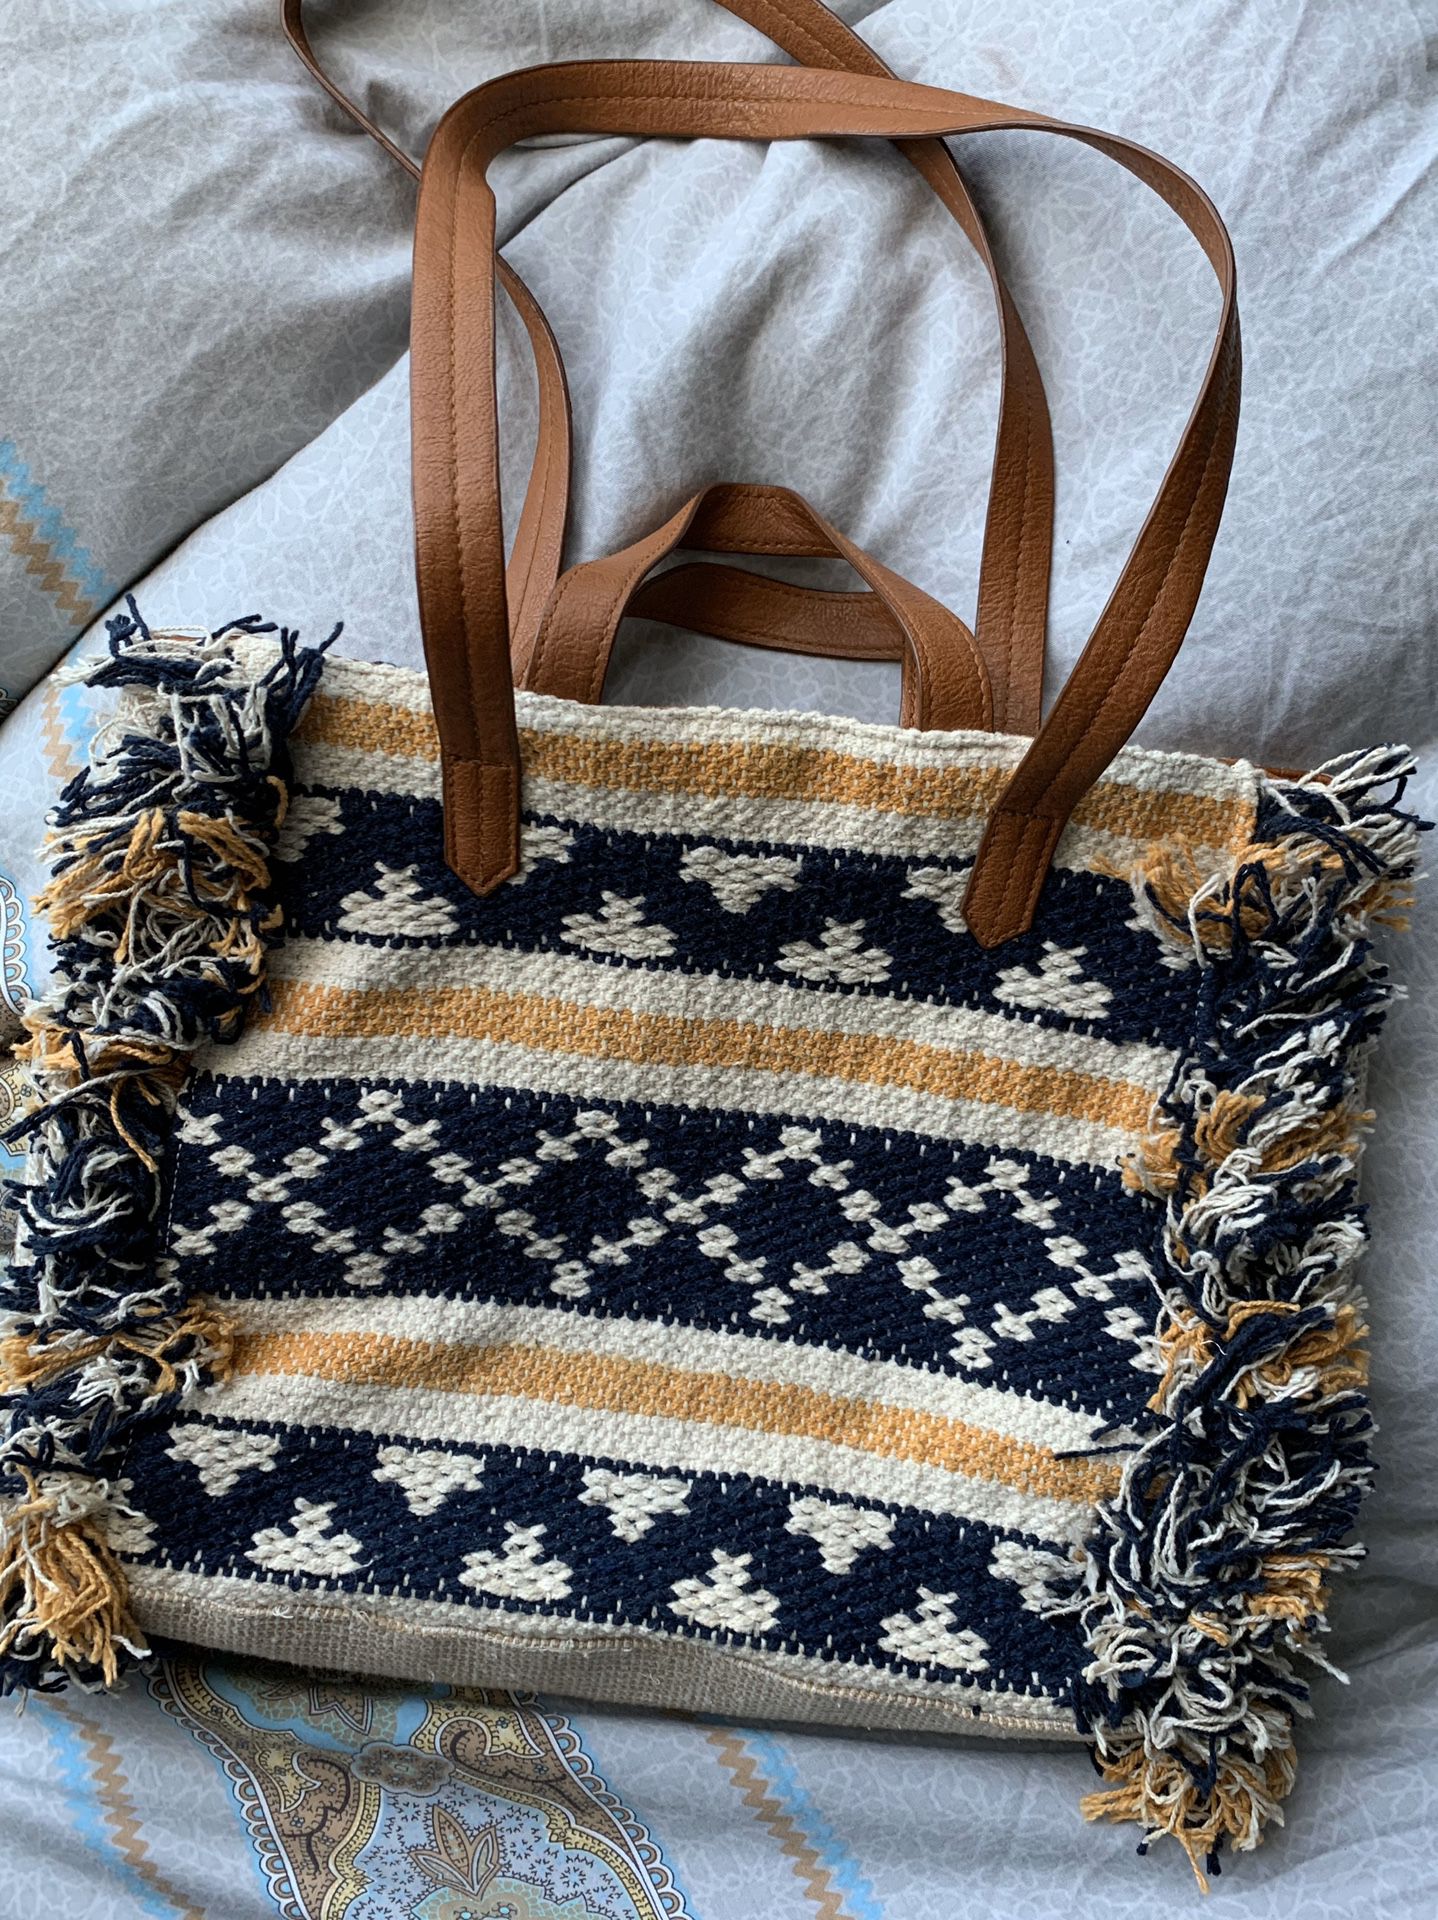 Cute & casual medium sized handbag